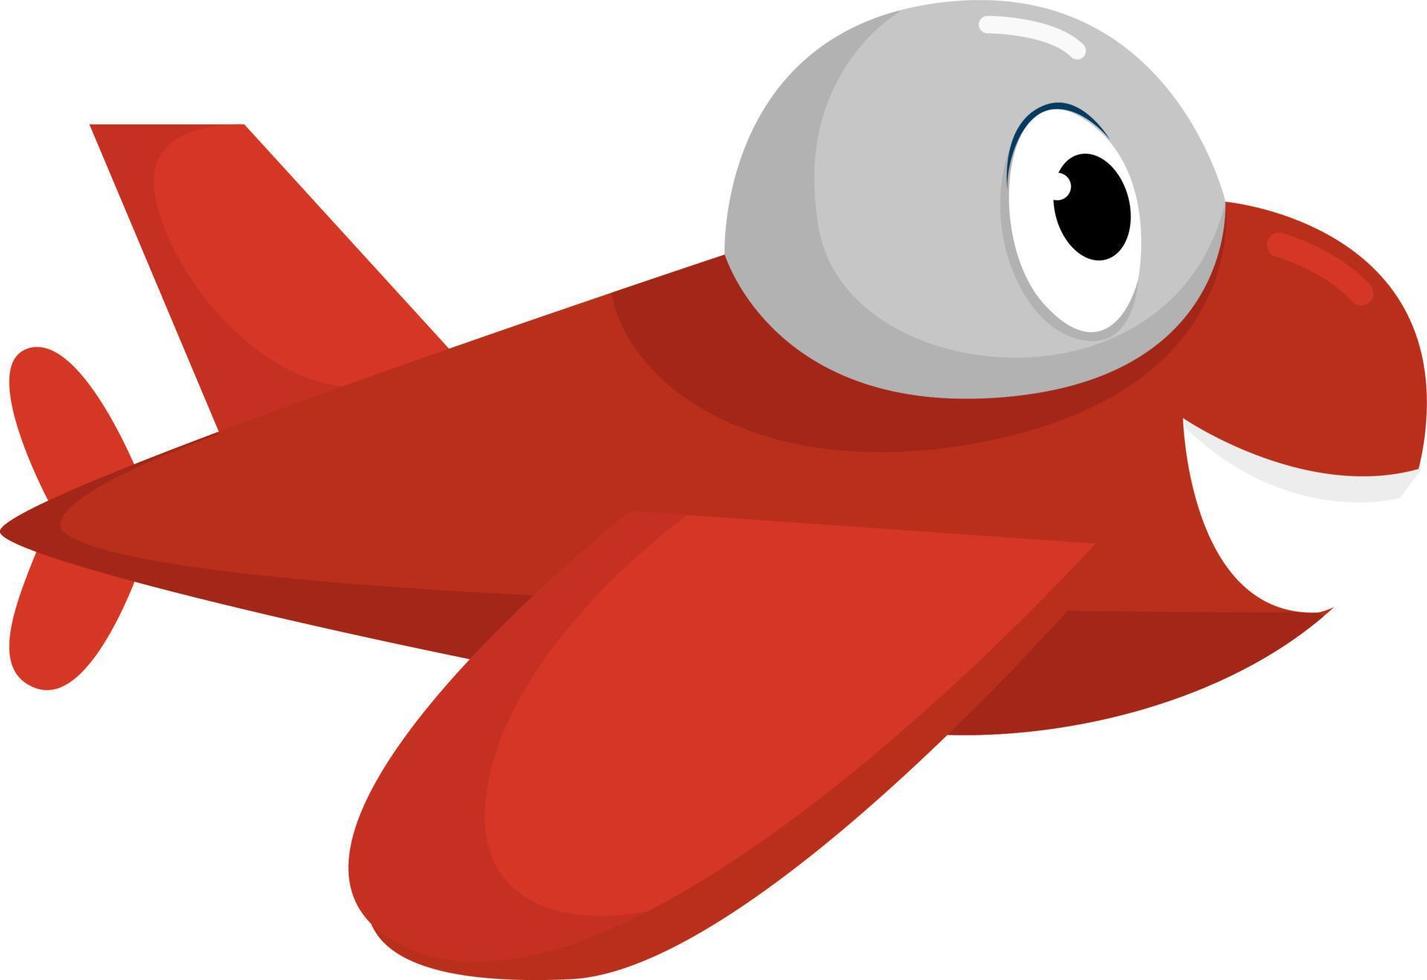 avion volant rouge, illustration, vecteur sur fond blanc.